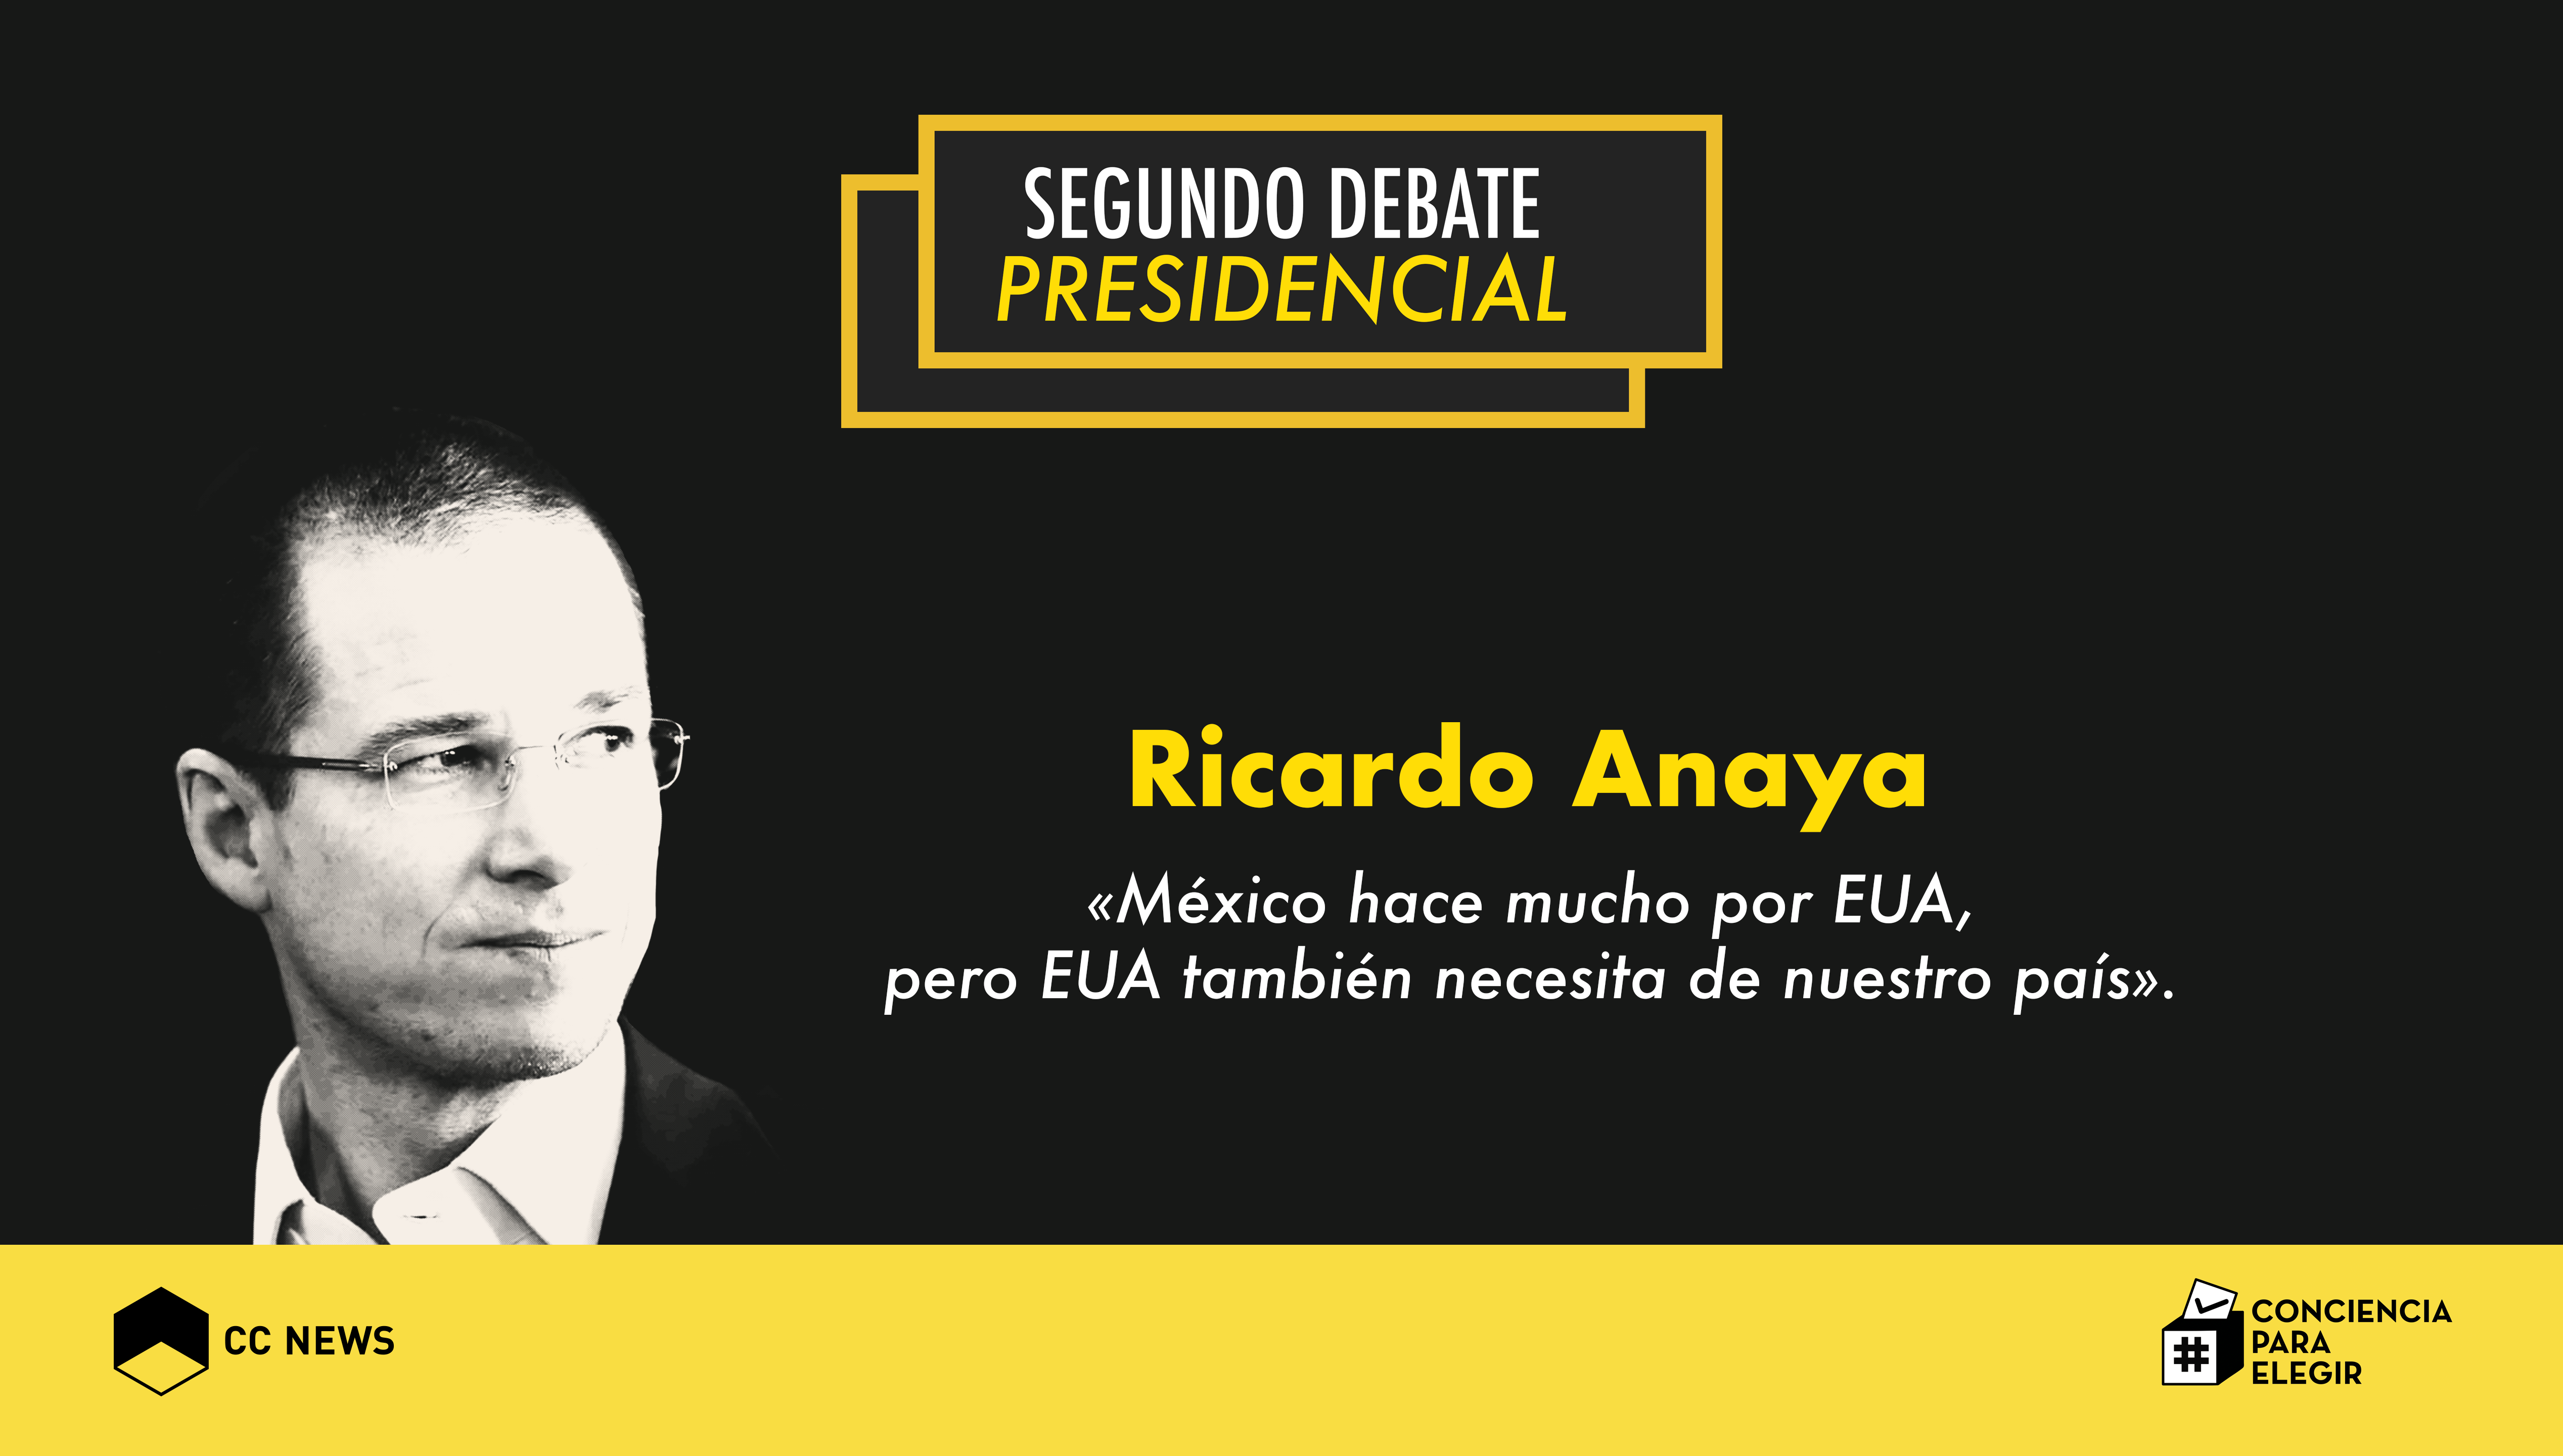 Trump en Los Pinos «fue una humillación»: Ricardo Anaya en el 2º Debate